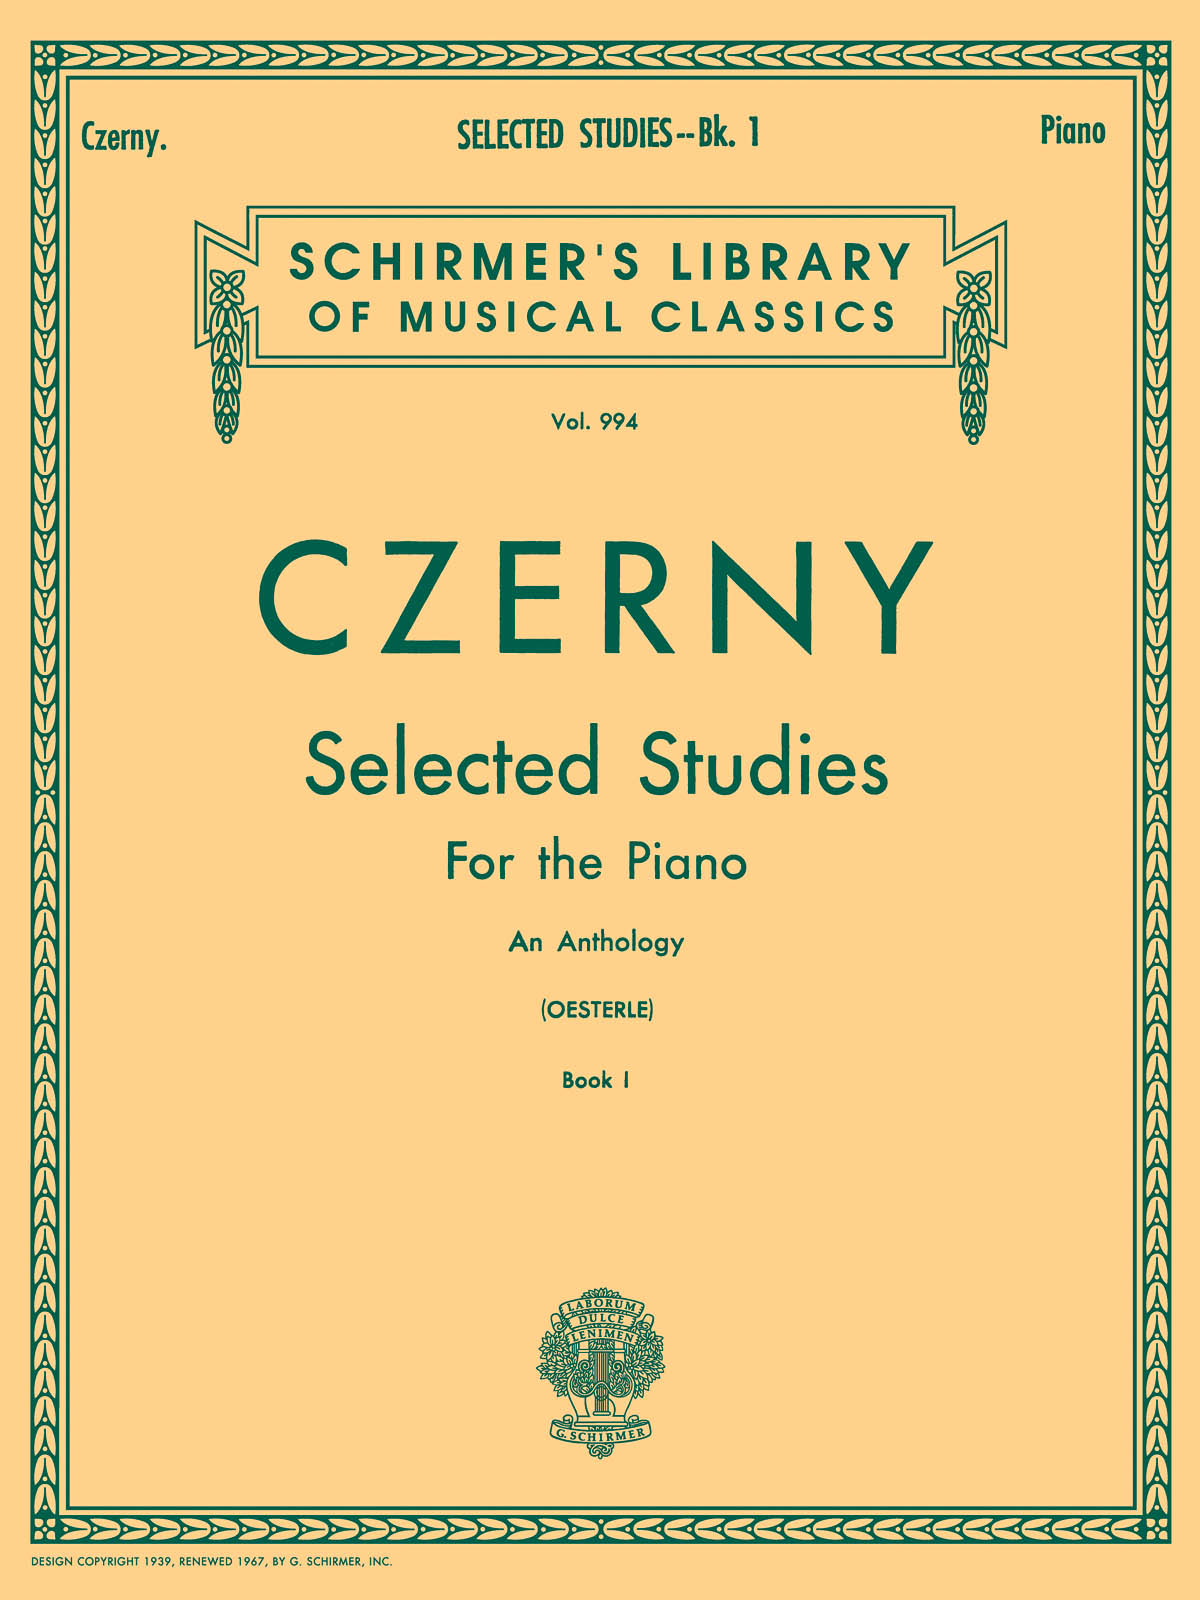 SCHIRMER CZERNY CARL - SELECTED STUDIES VOL.1 - PIANO